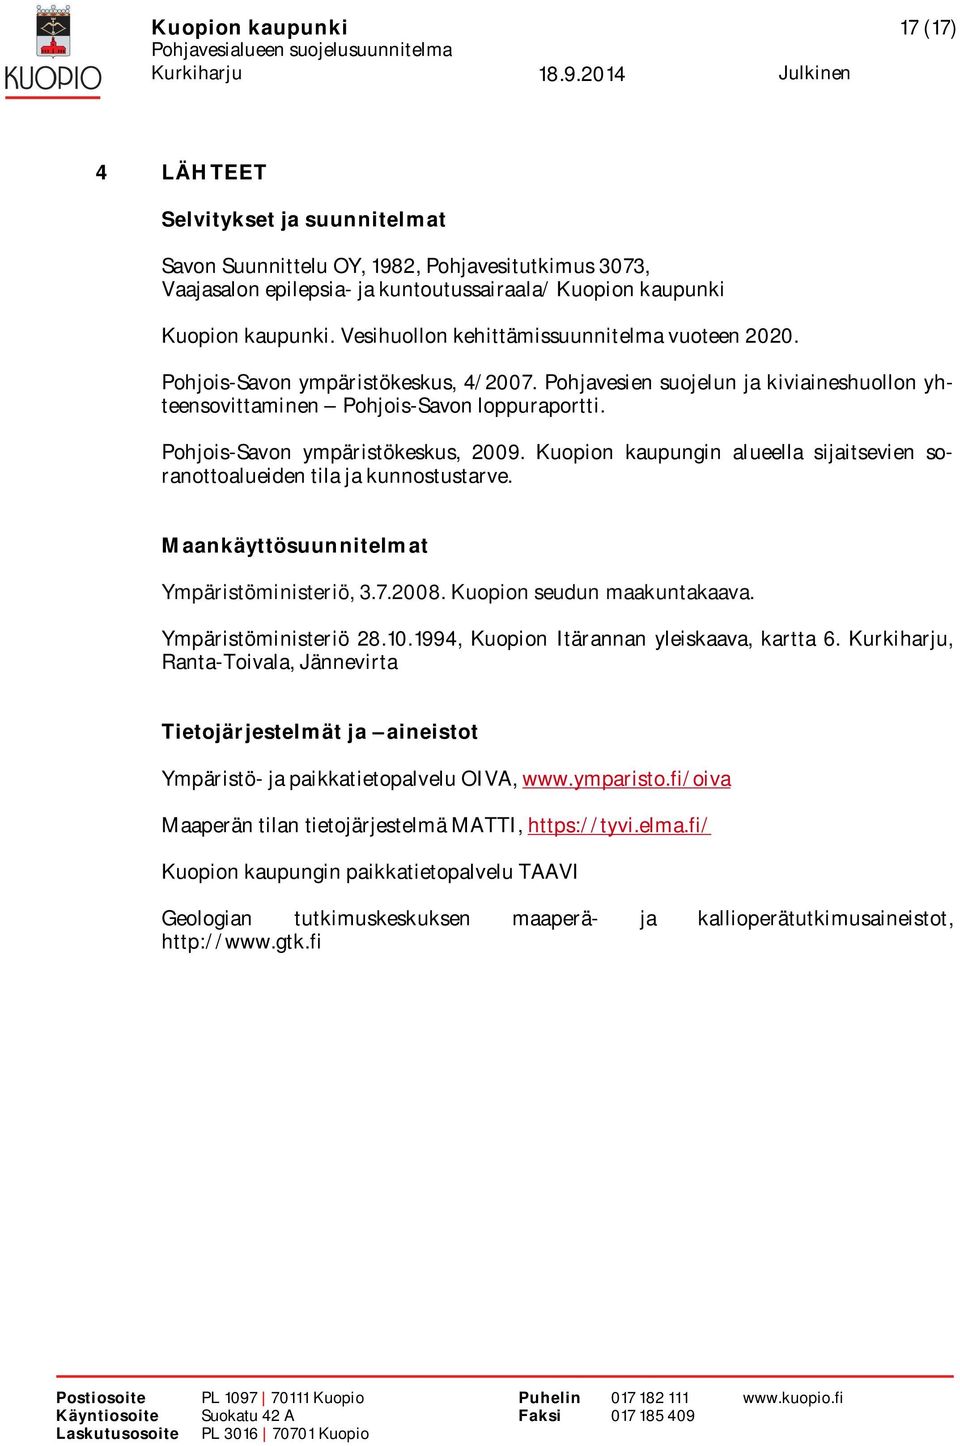 Pohjois-Savon ympäristökeskus, 2009. Kuopion kaupungin alueella sijaitsevien soranottoalueiden tila ja kunnostustarve. Maankäyttösuunnitelmat Ympäristöministeriö, 3.7.2008.